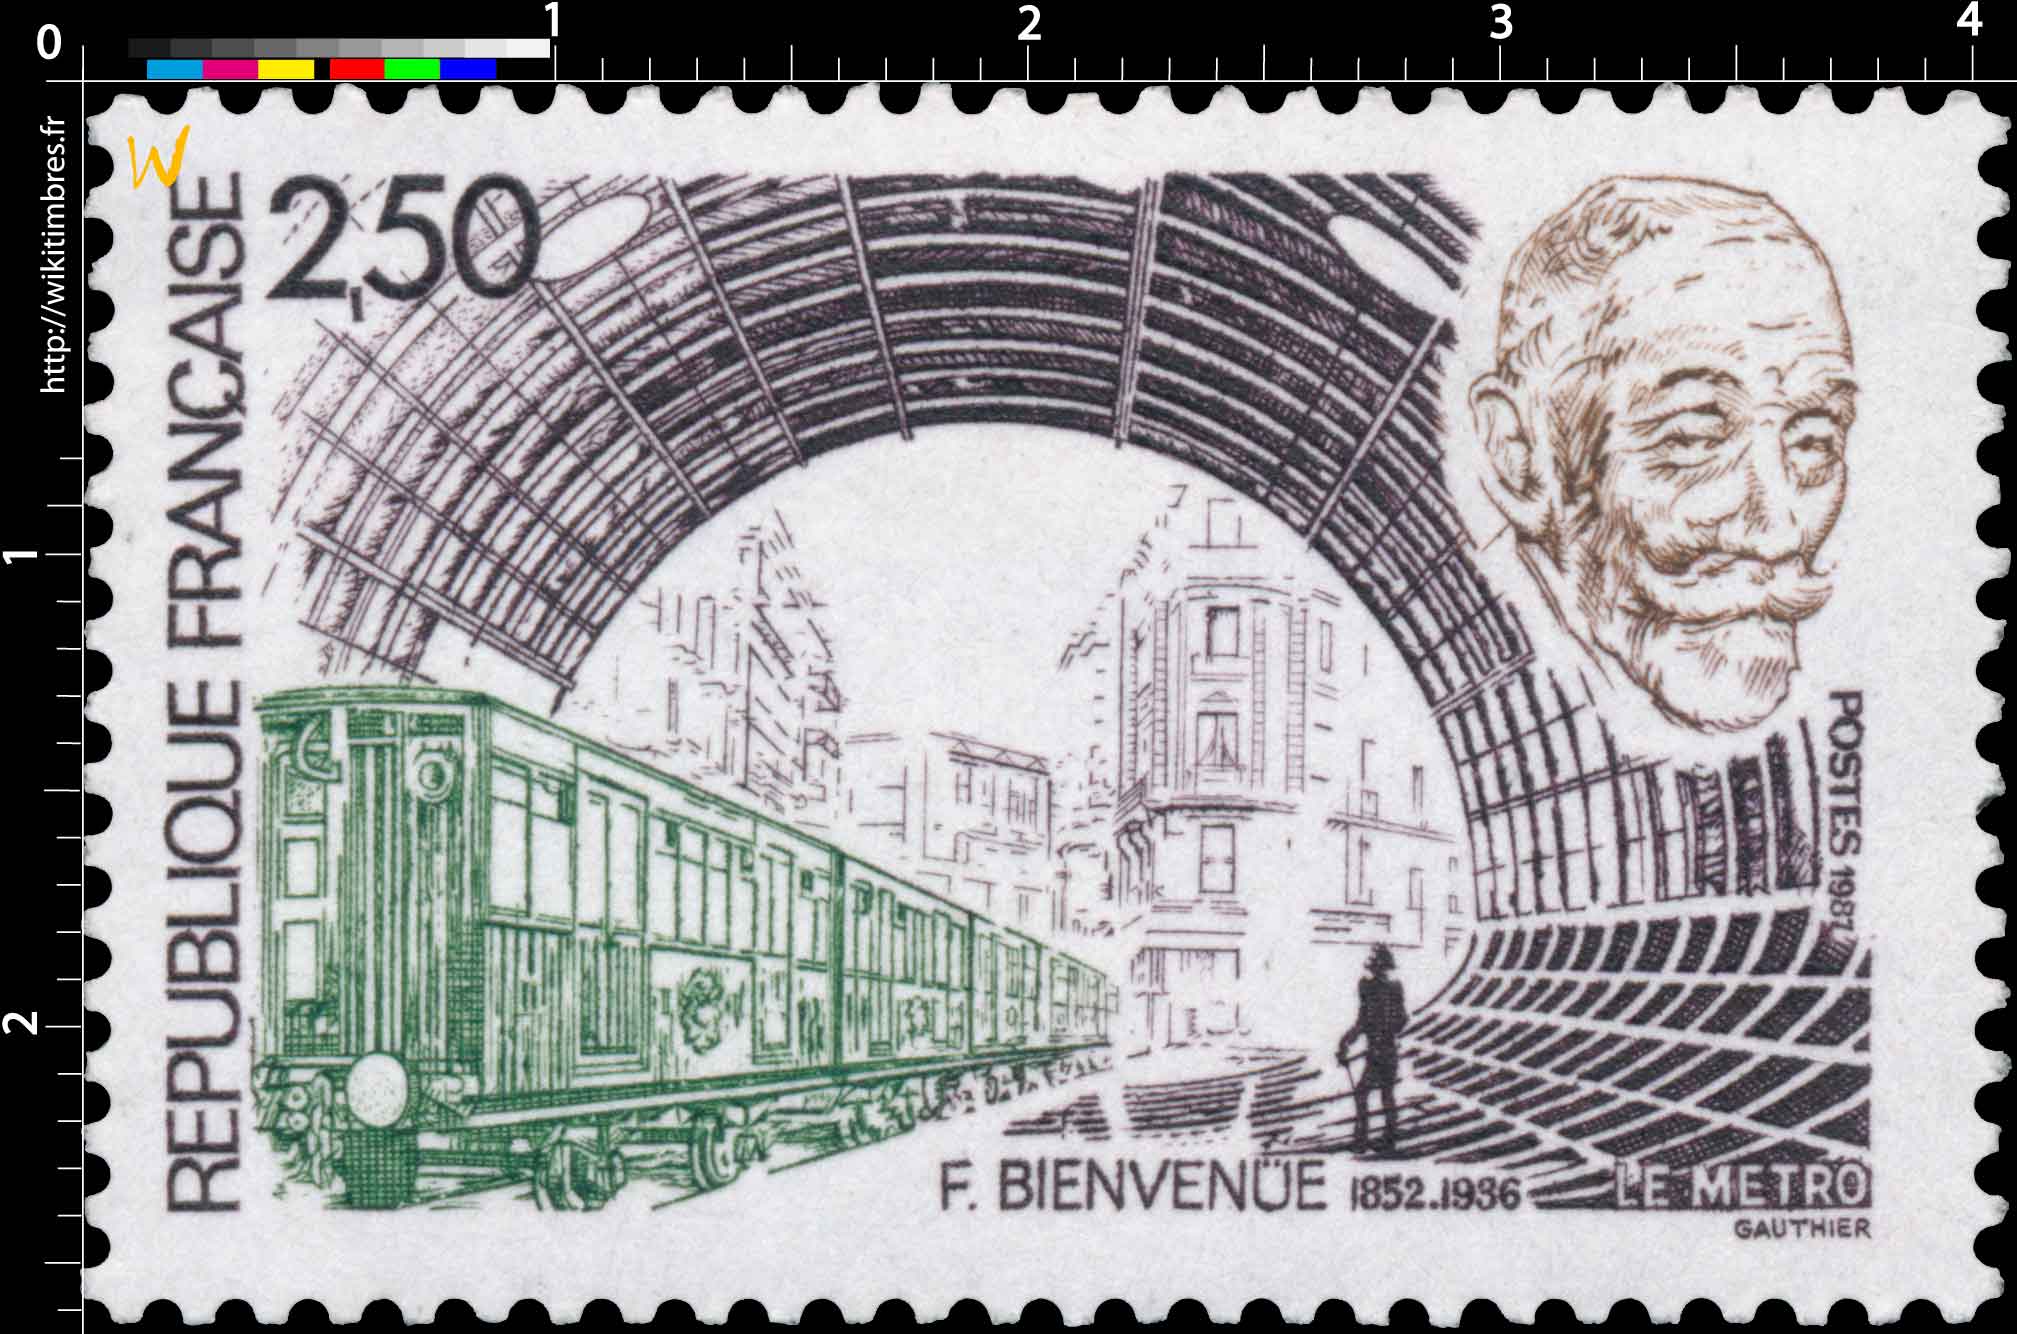 1987 F. BIENVENUE 1852-1936 LE METRO